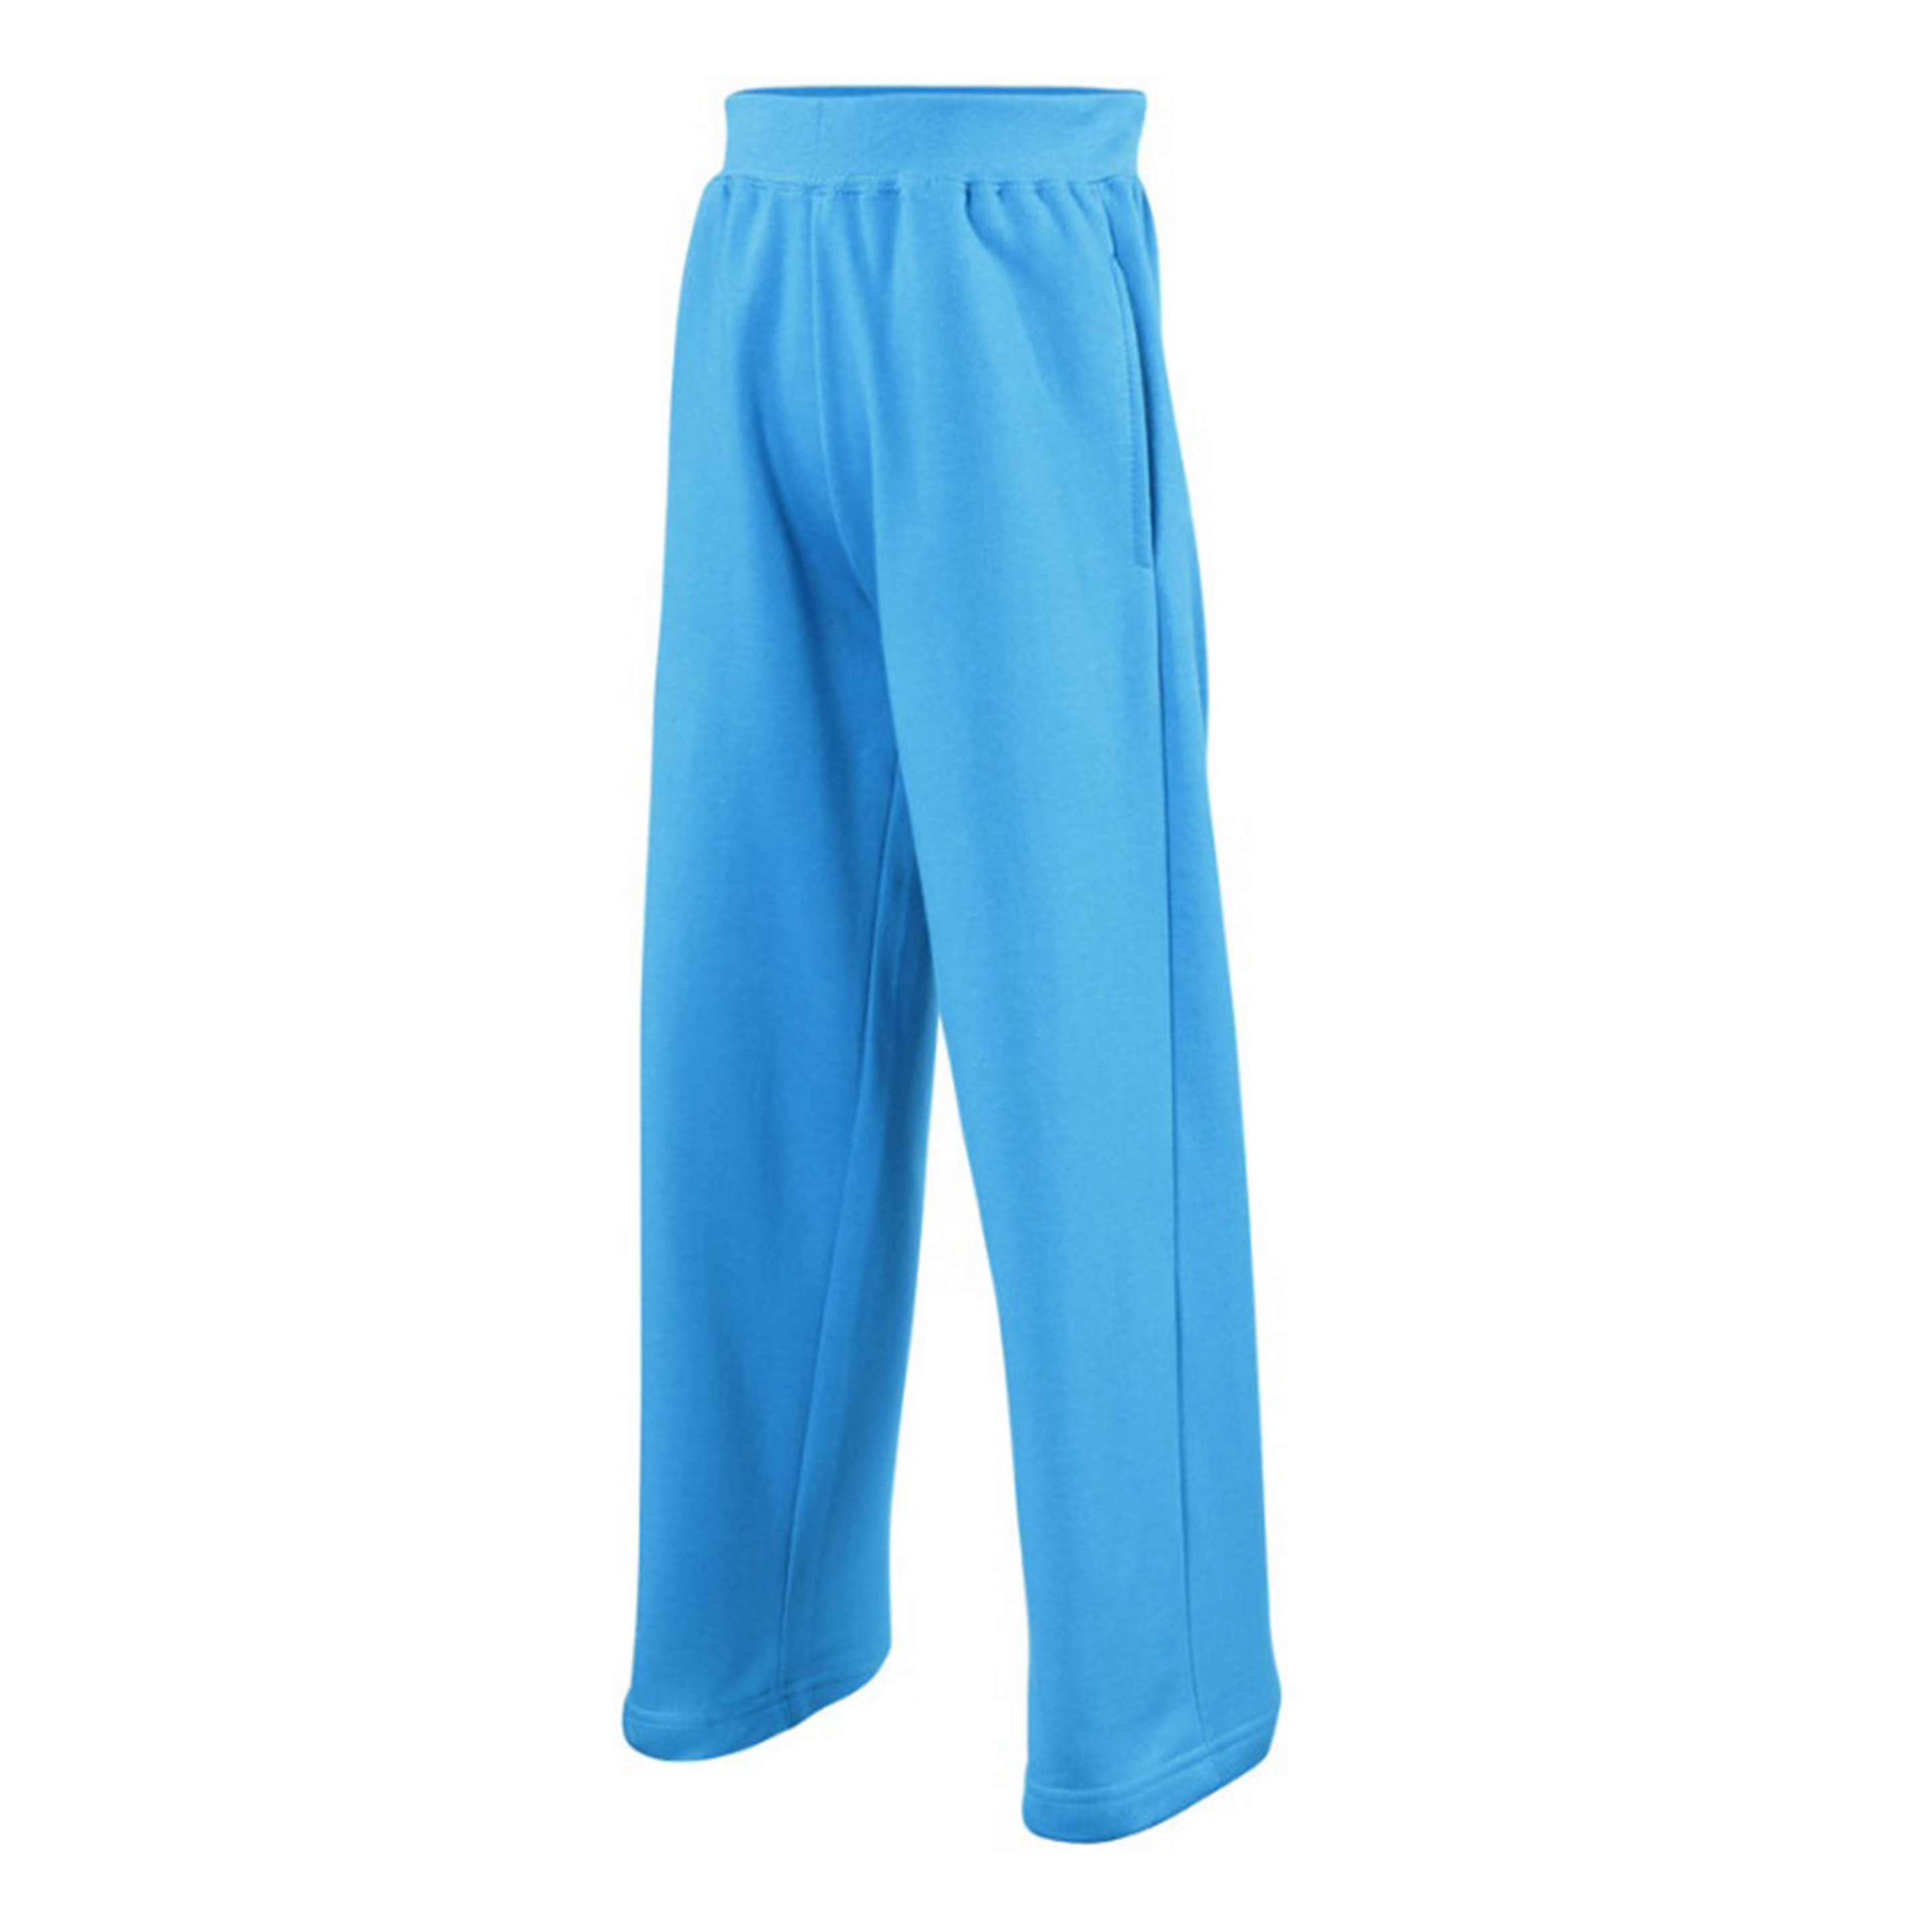 Pantalones De Deporte Unisex Para Niños (Paquete De 2) Awdis (Azul)